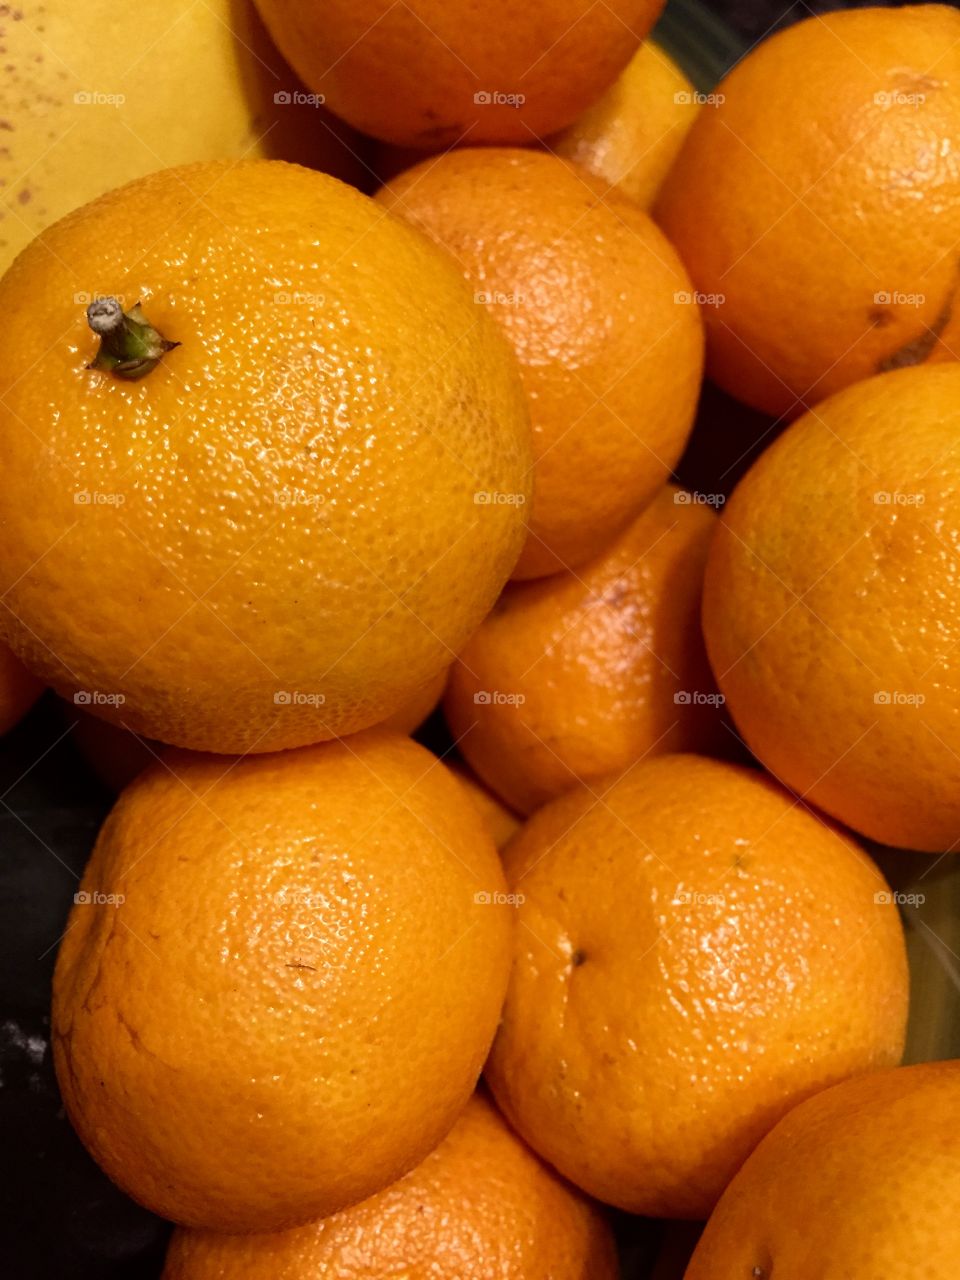 Oranges! 🍊🍊🍊